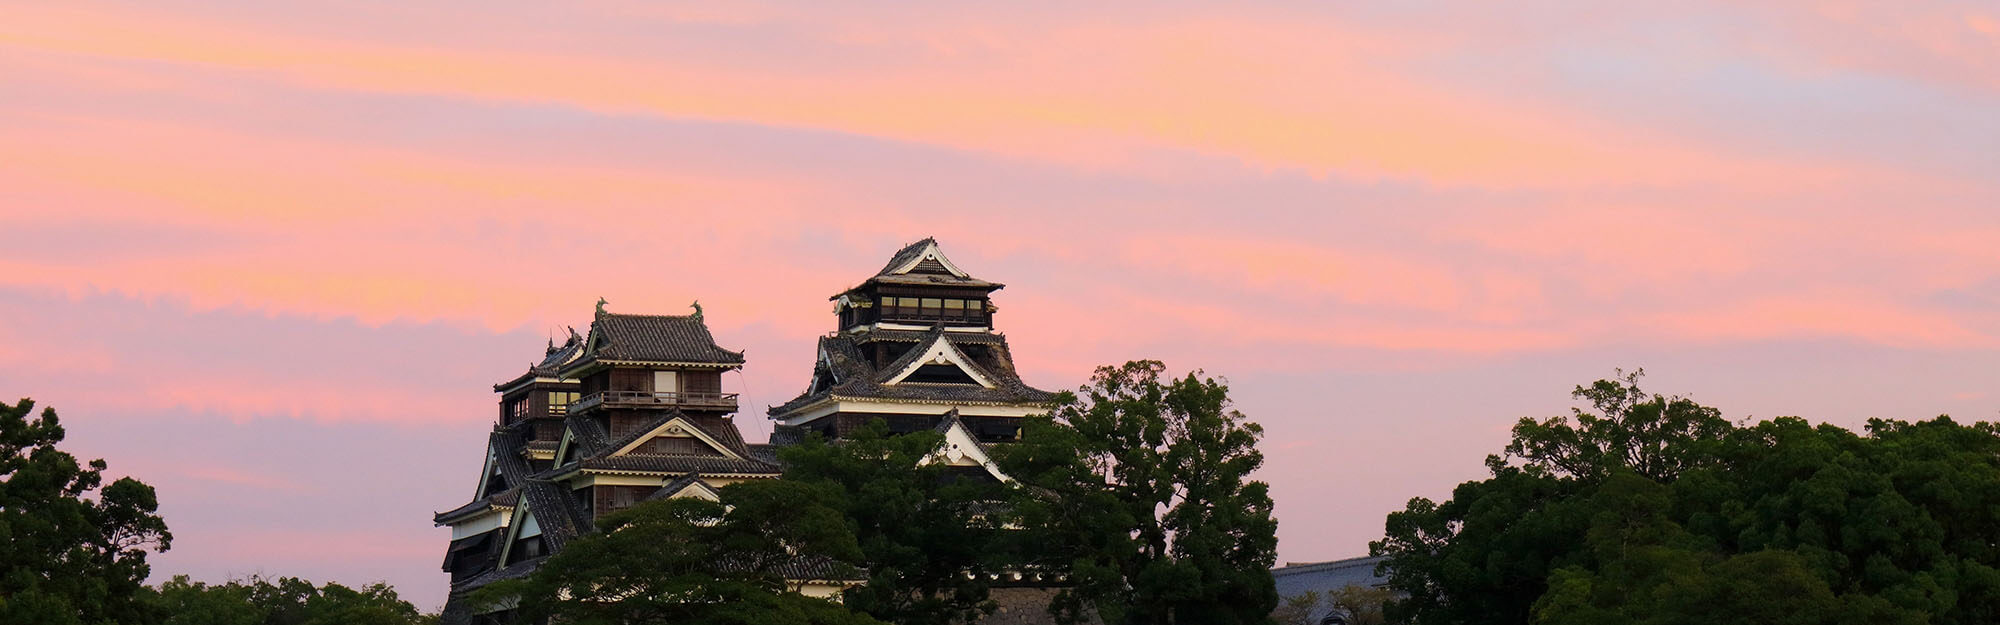 About Kumamoto Castle | 【公式】熊本城